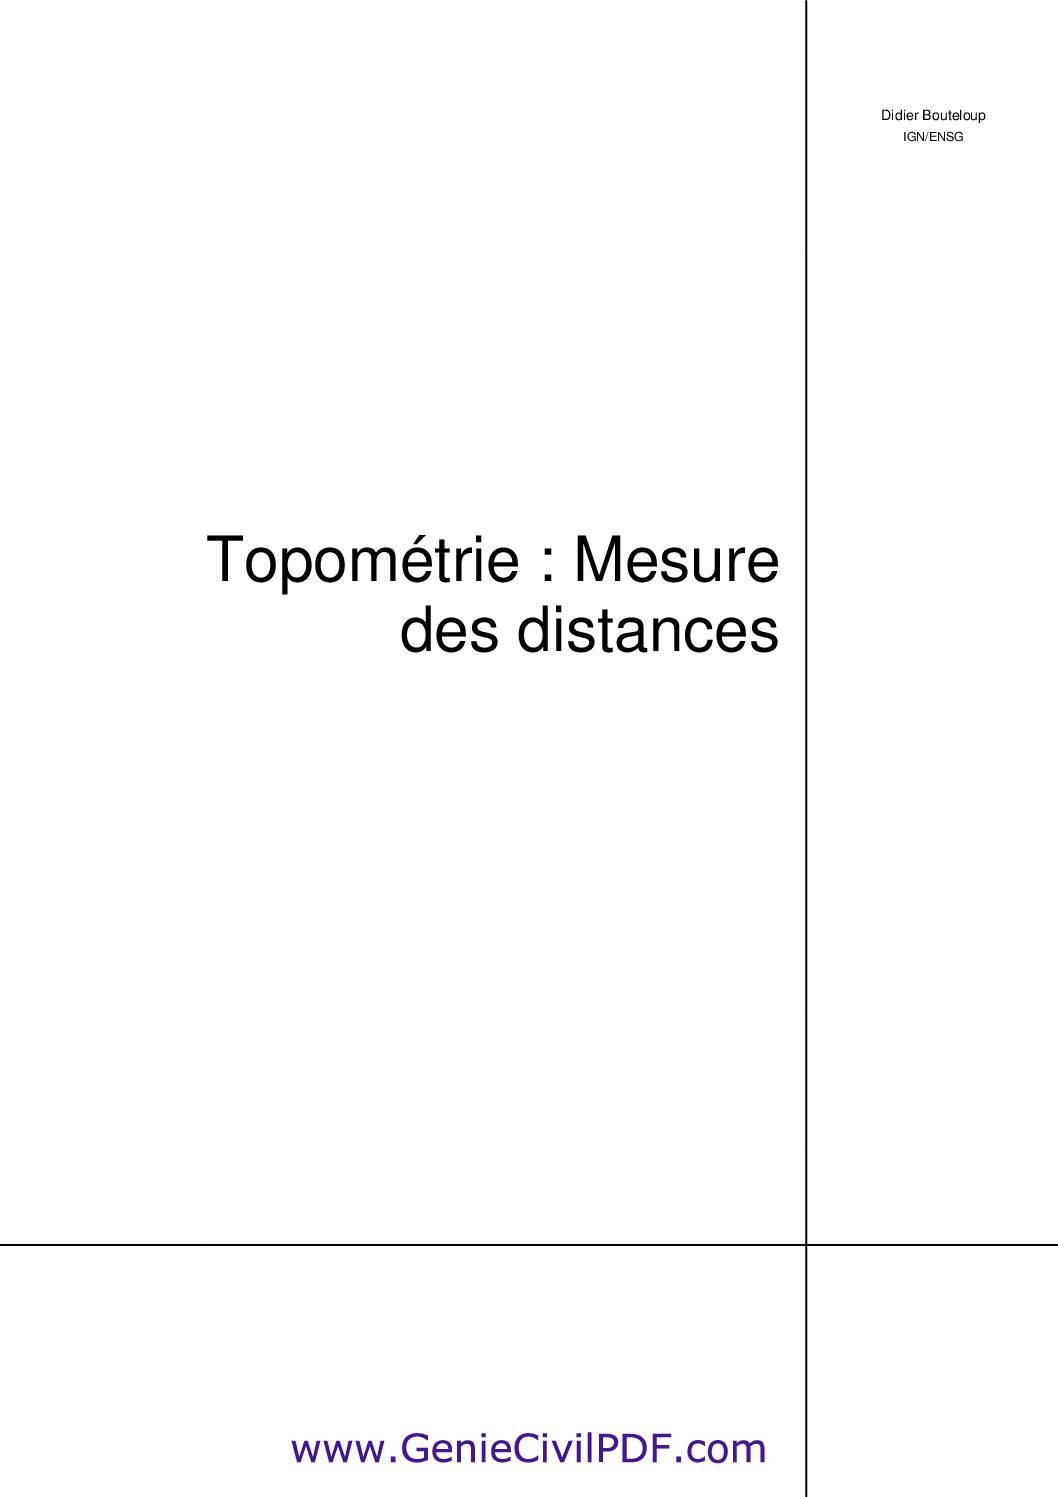 Topométrie mesure des distances